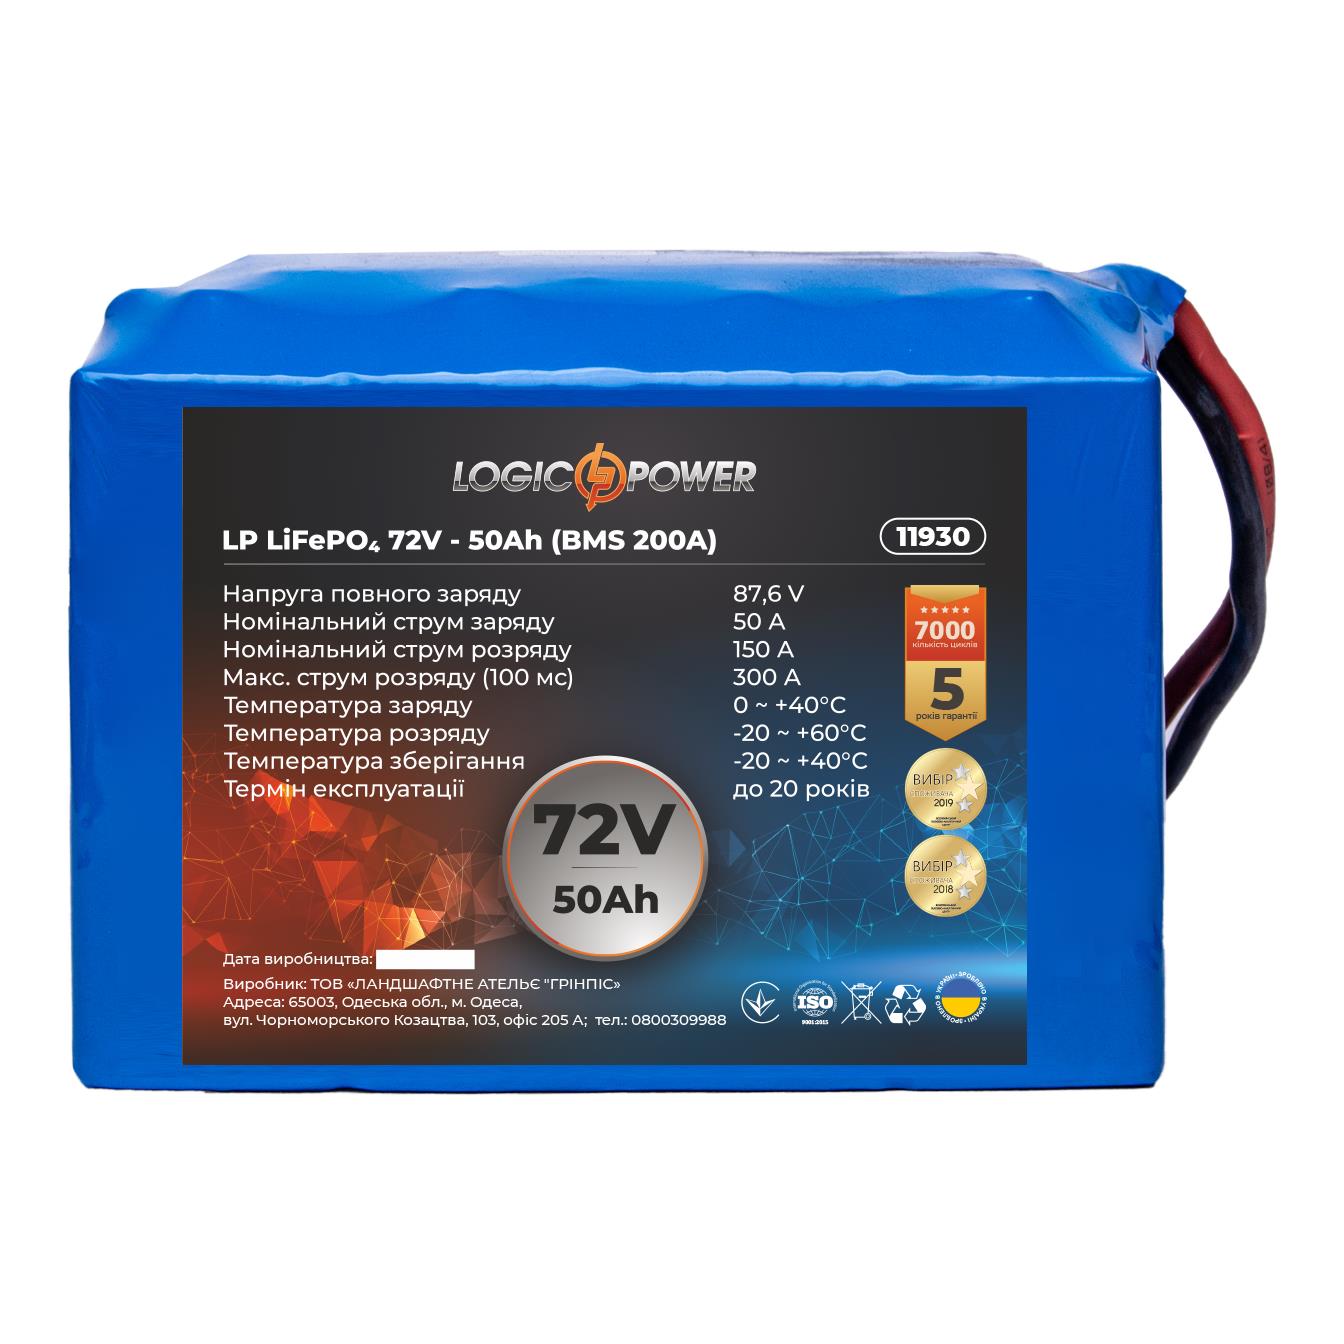 Аккумулятор литий-железо-фосфатный LogicPower LP LiFePO4 72V - 50 Ah (BMS 200A) (11930) в интернет-магазине, главное фото